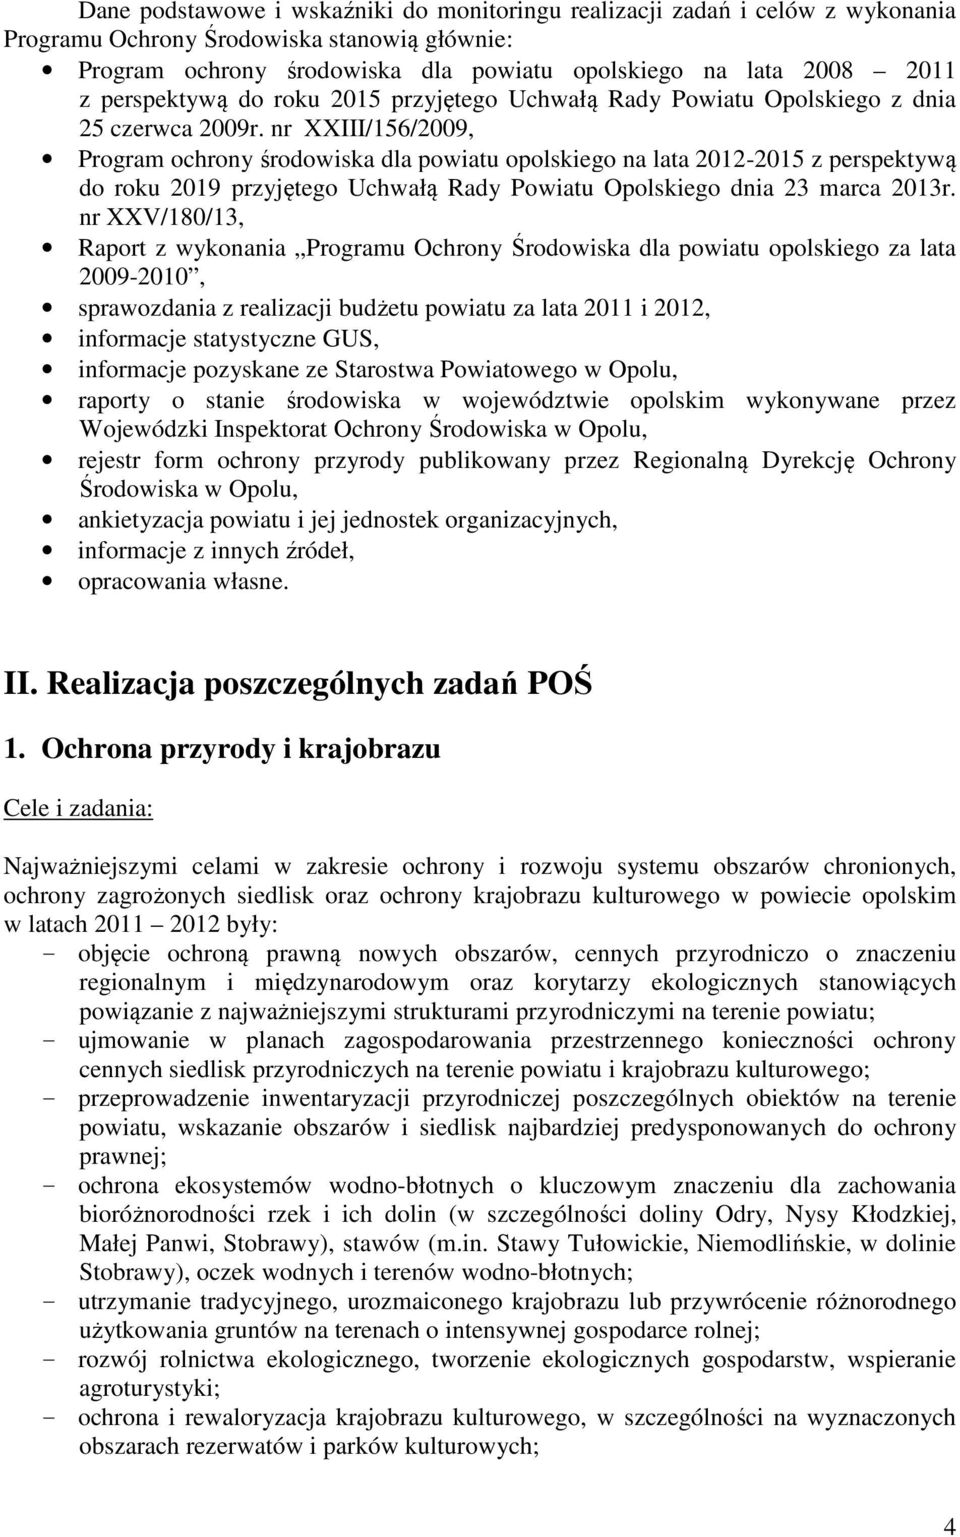 nr XXIII/156/2009, Program ochrony środowiska dla powiatu opolskiego na lata 2012-2015 z perspektywą do roku 2019 przyjętego Uchwałą Rady Powiatu Opolskiego dnia 23 marca 2013r.